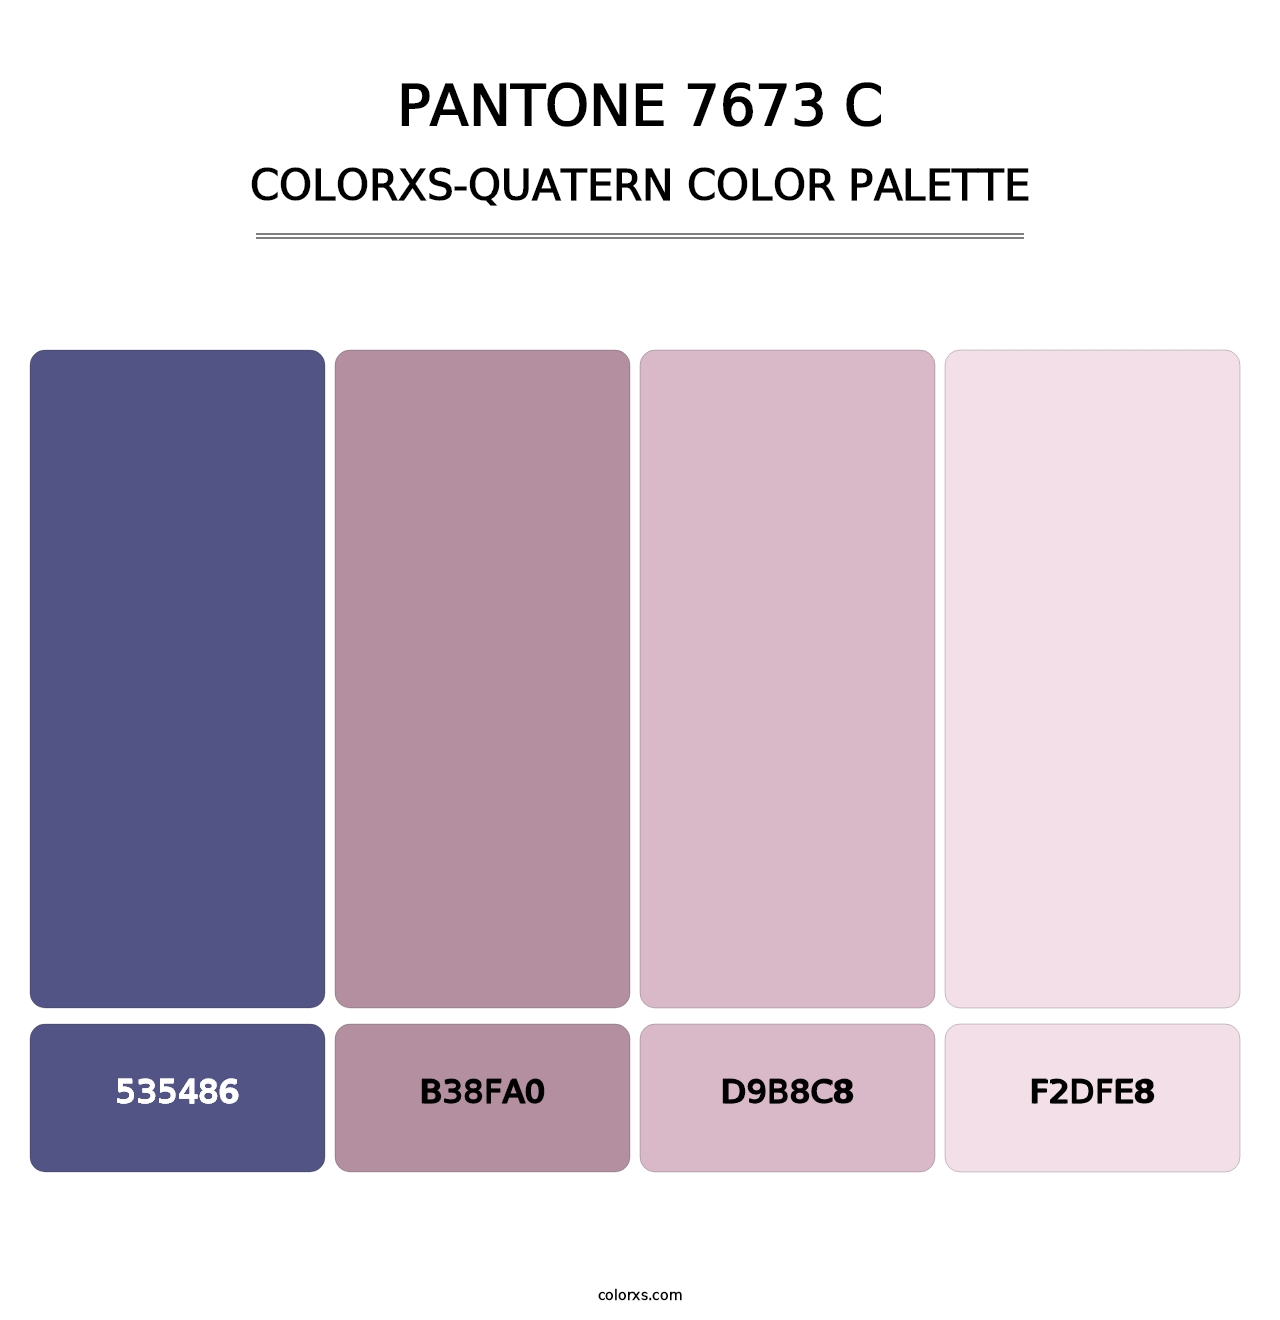 PANTONE 7673 C - Colorxs Quatern Palette